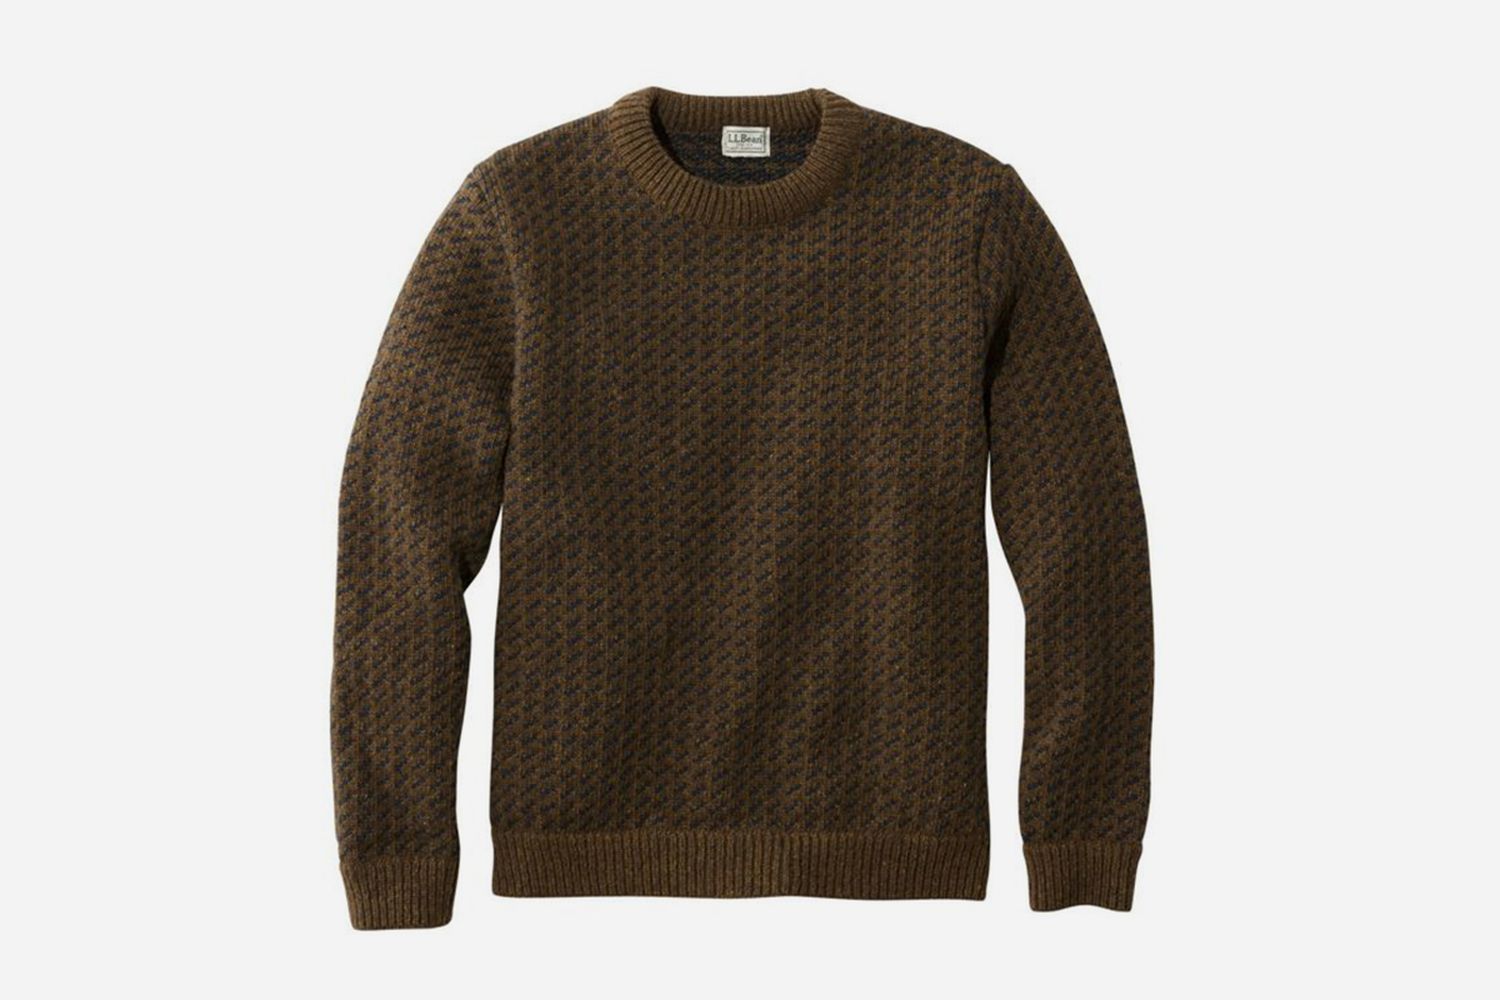 Snoh Aalegra Wears the Best Boyfriend Sweaters of 2019